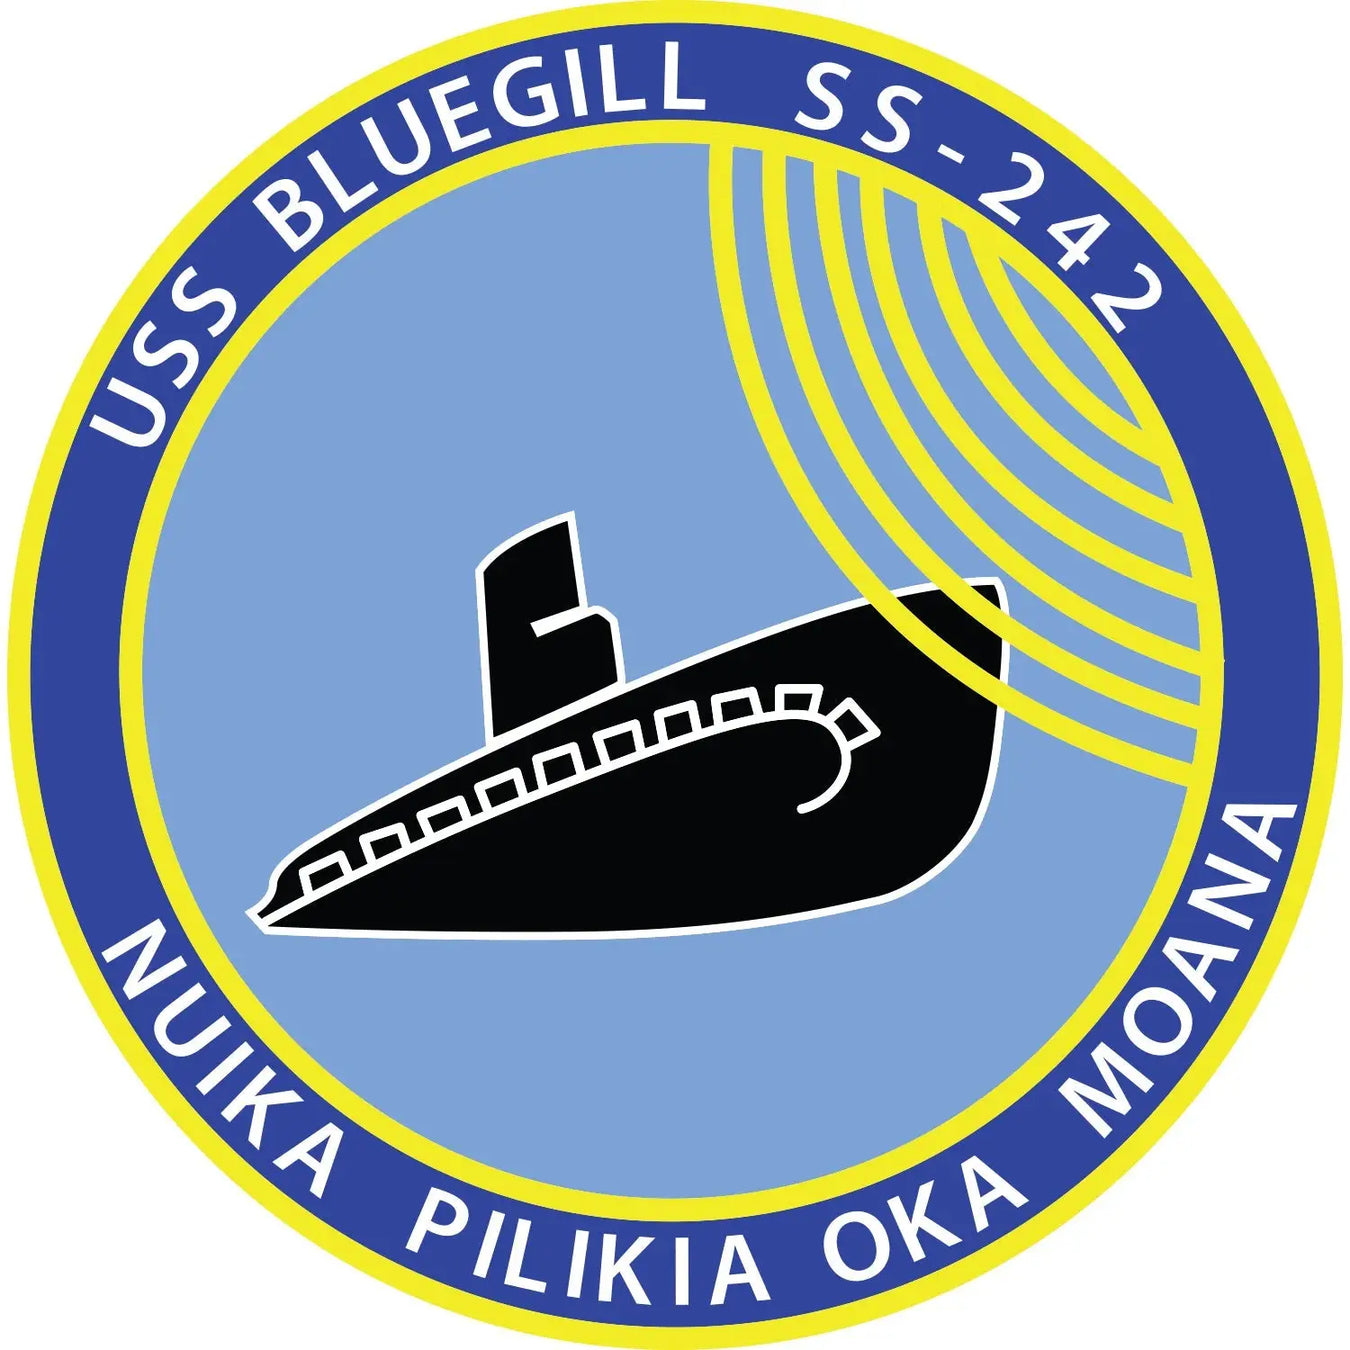 USS Bluegill (SS-242)